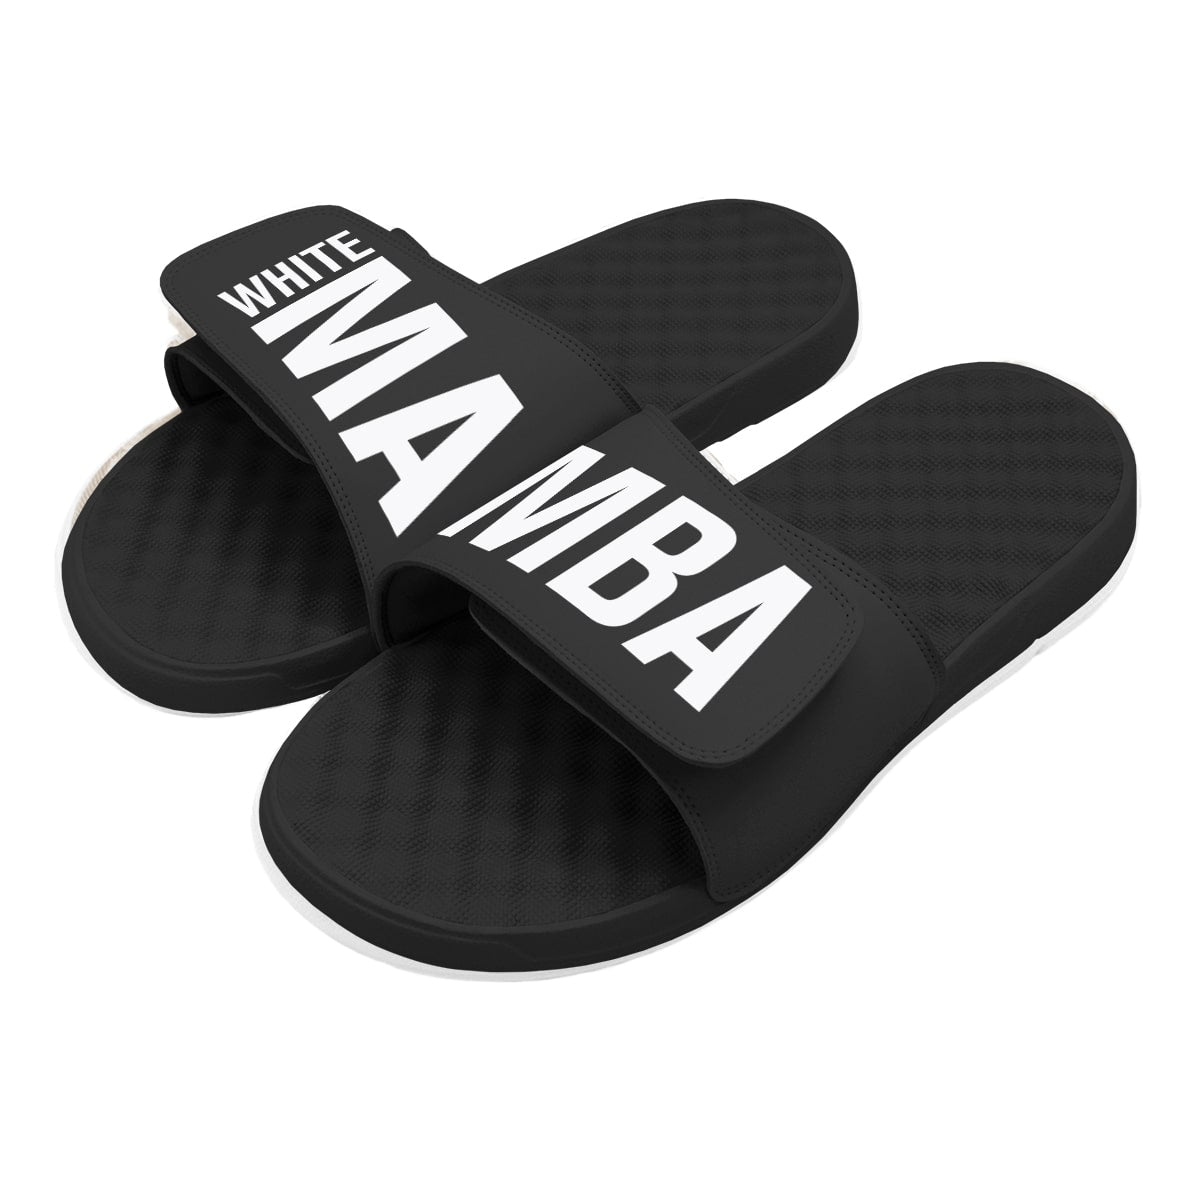 White Mamba Original Slides